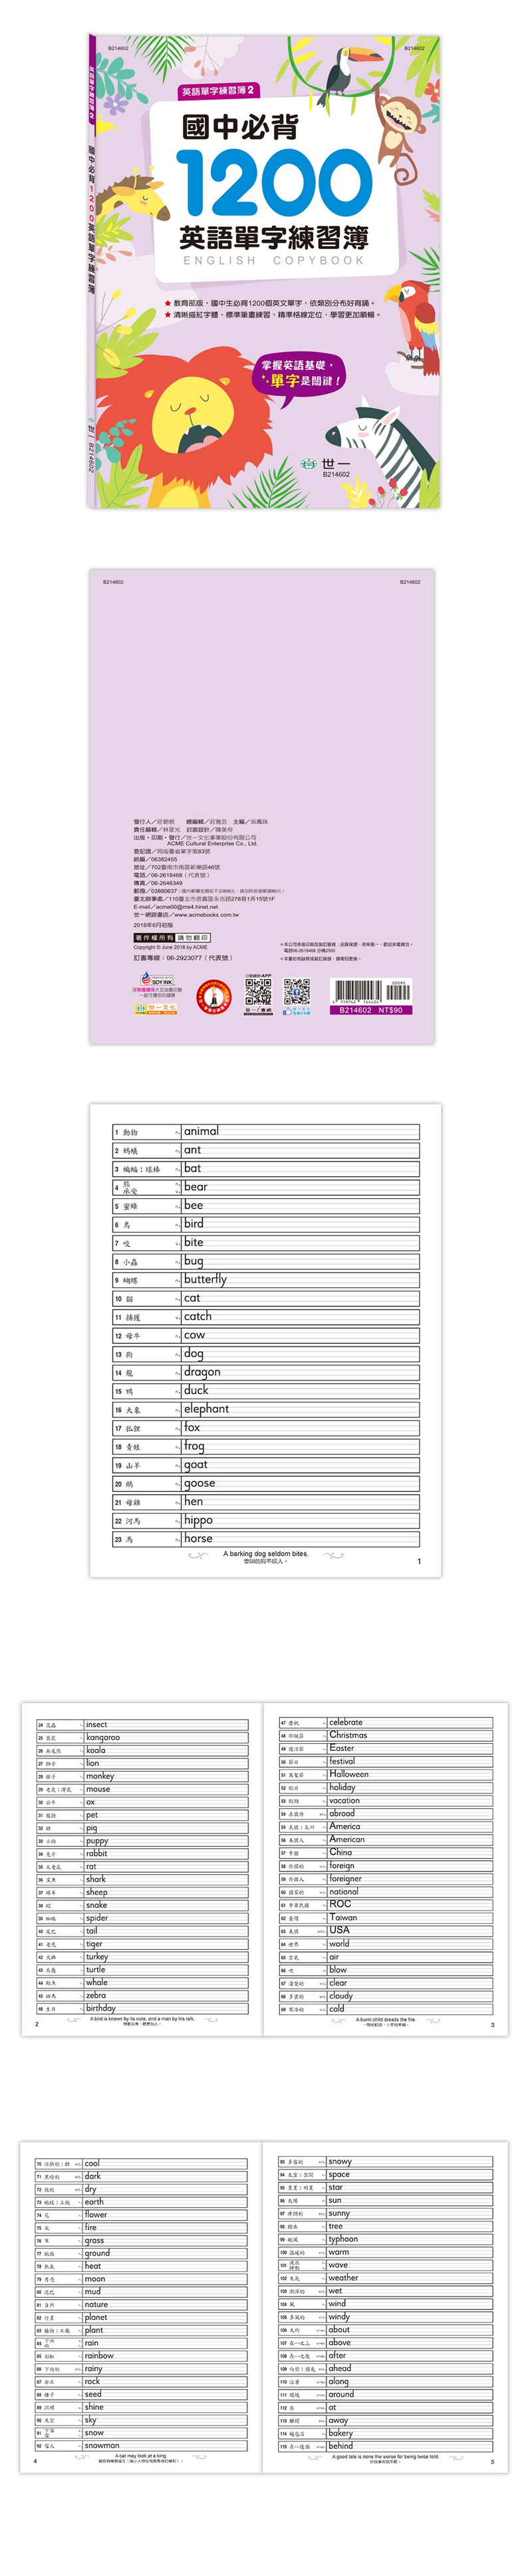 單字 練習簿 英語 練習簿 國中 練習簿